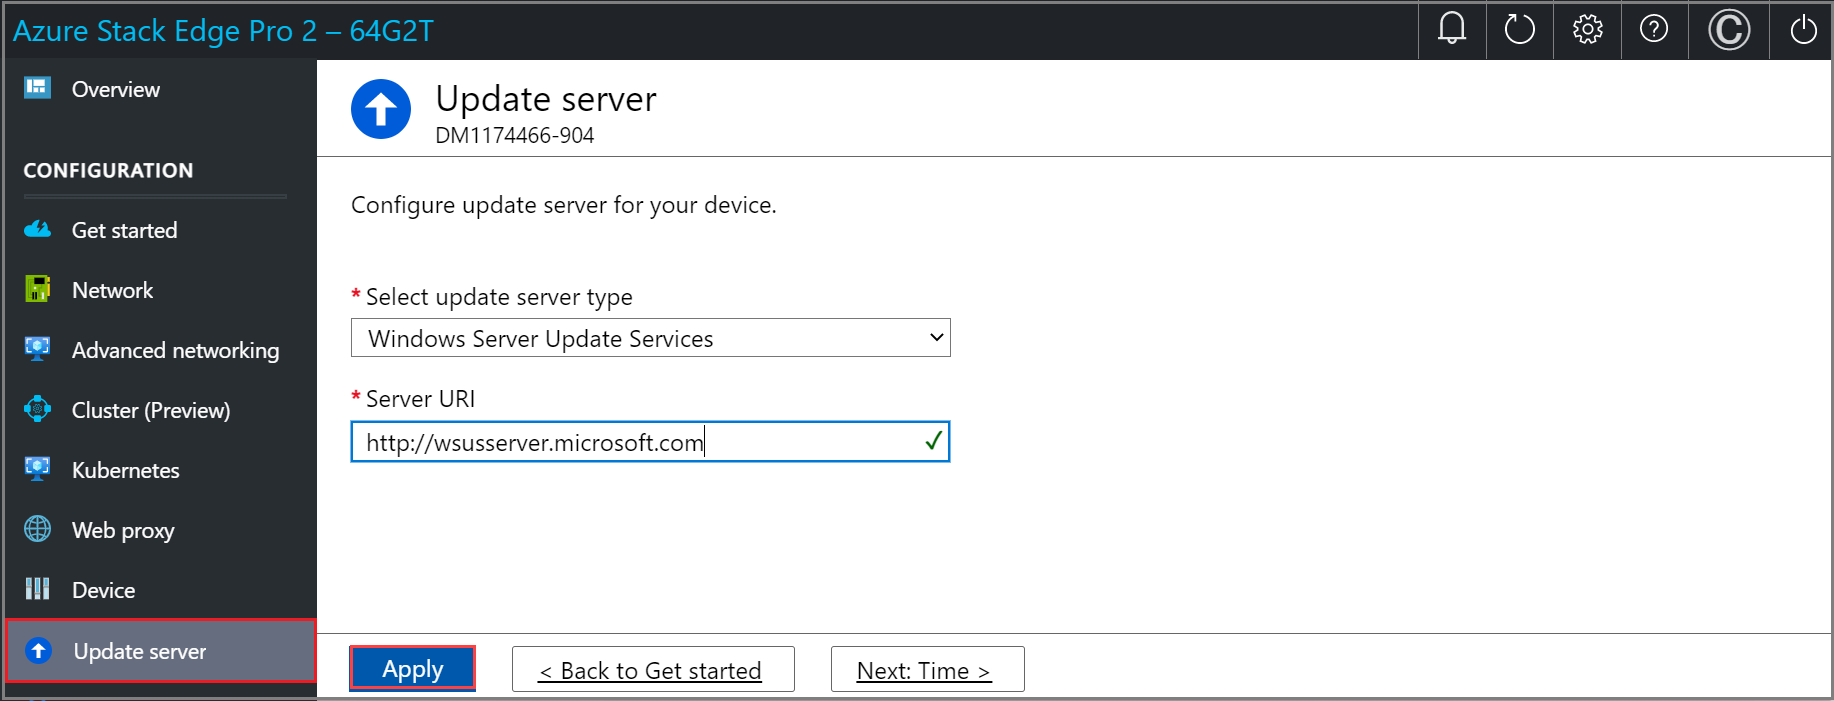 Képernyőkép a Kiszolgáló frissítése lapról, amelyen Windows Server Update Services konfigurálva van egy Azure Stack Edge-eszköz helyi webes felhasználói felületén. Az Alkalmaz gomb ki van emelve.